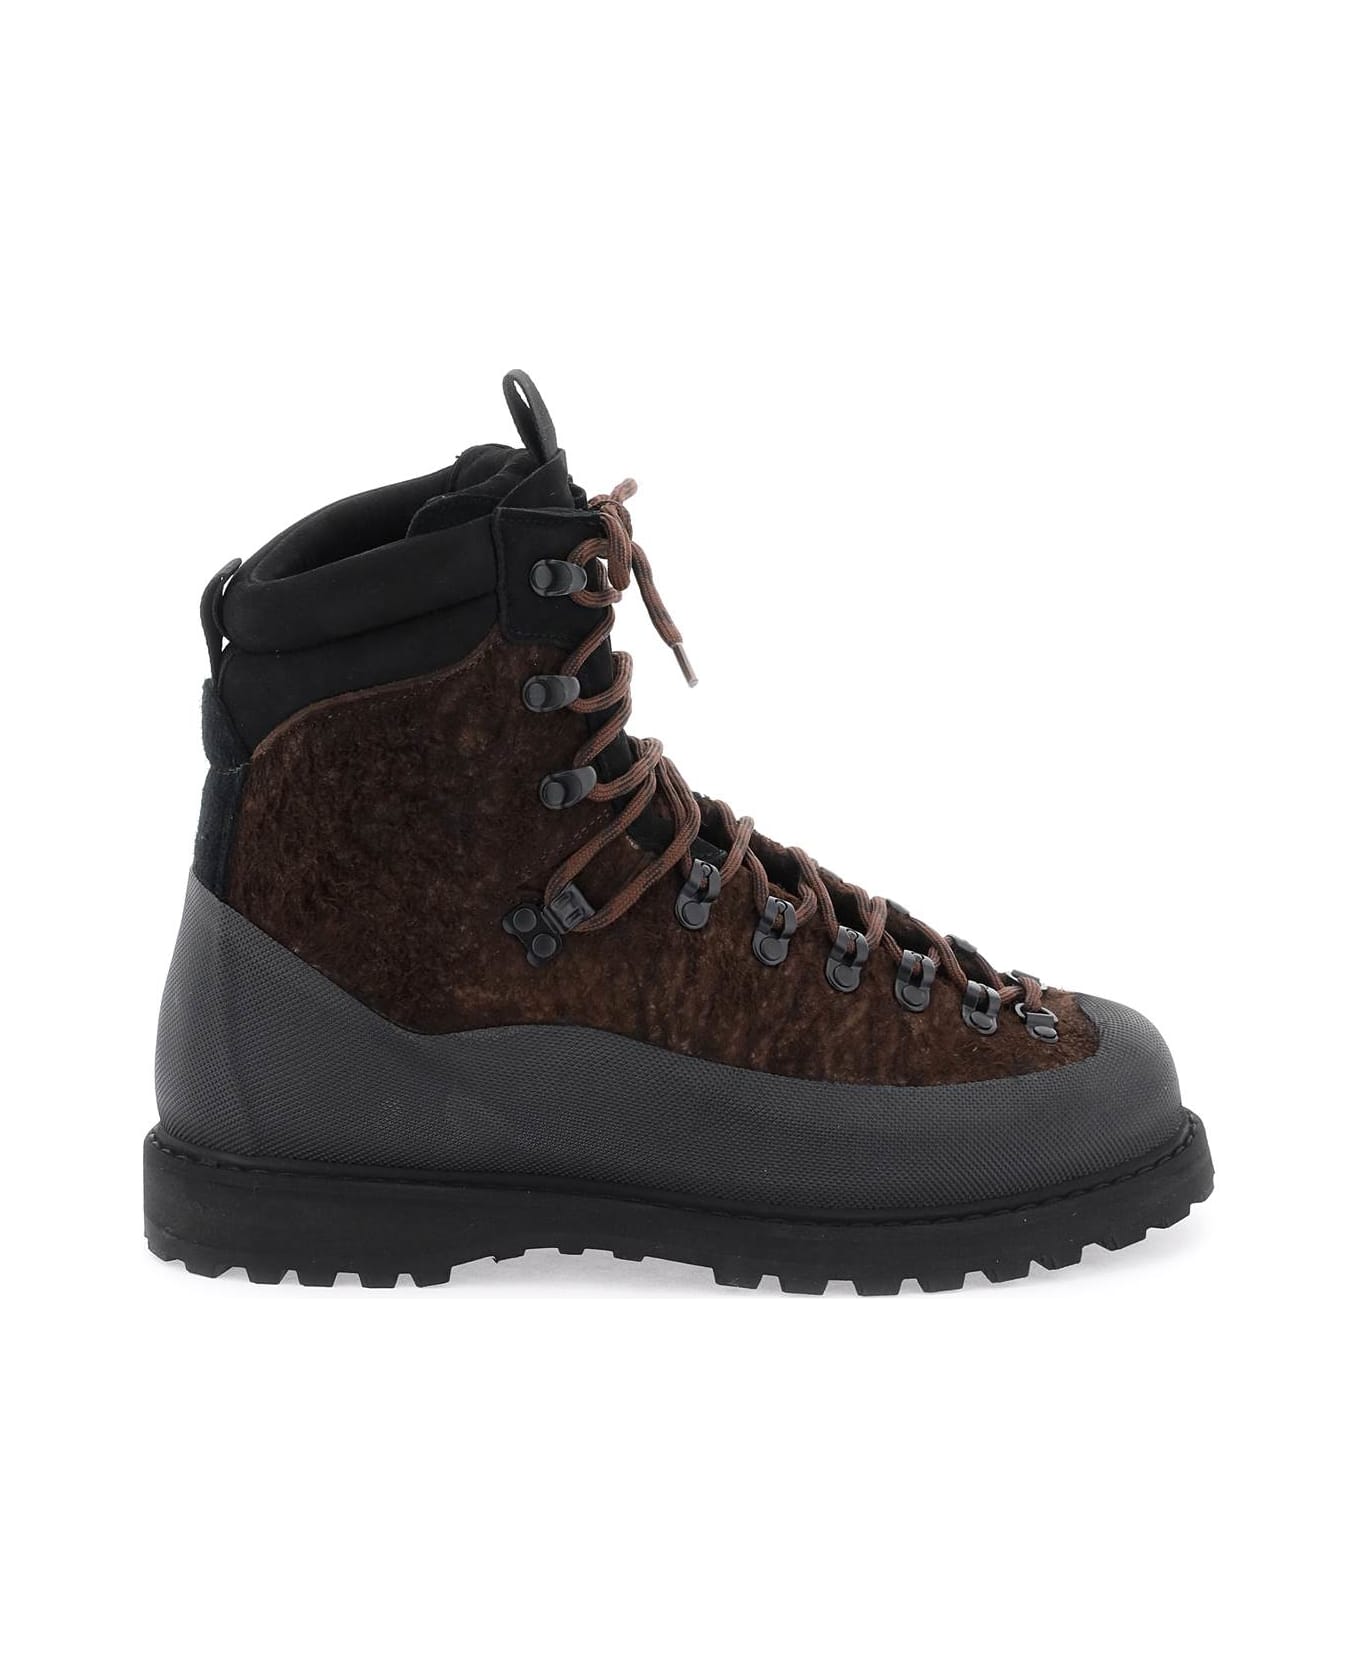 Diemme Everest Trekking Boots - DARK BROWN (Brown)